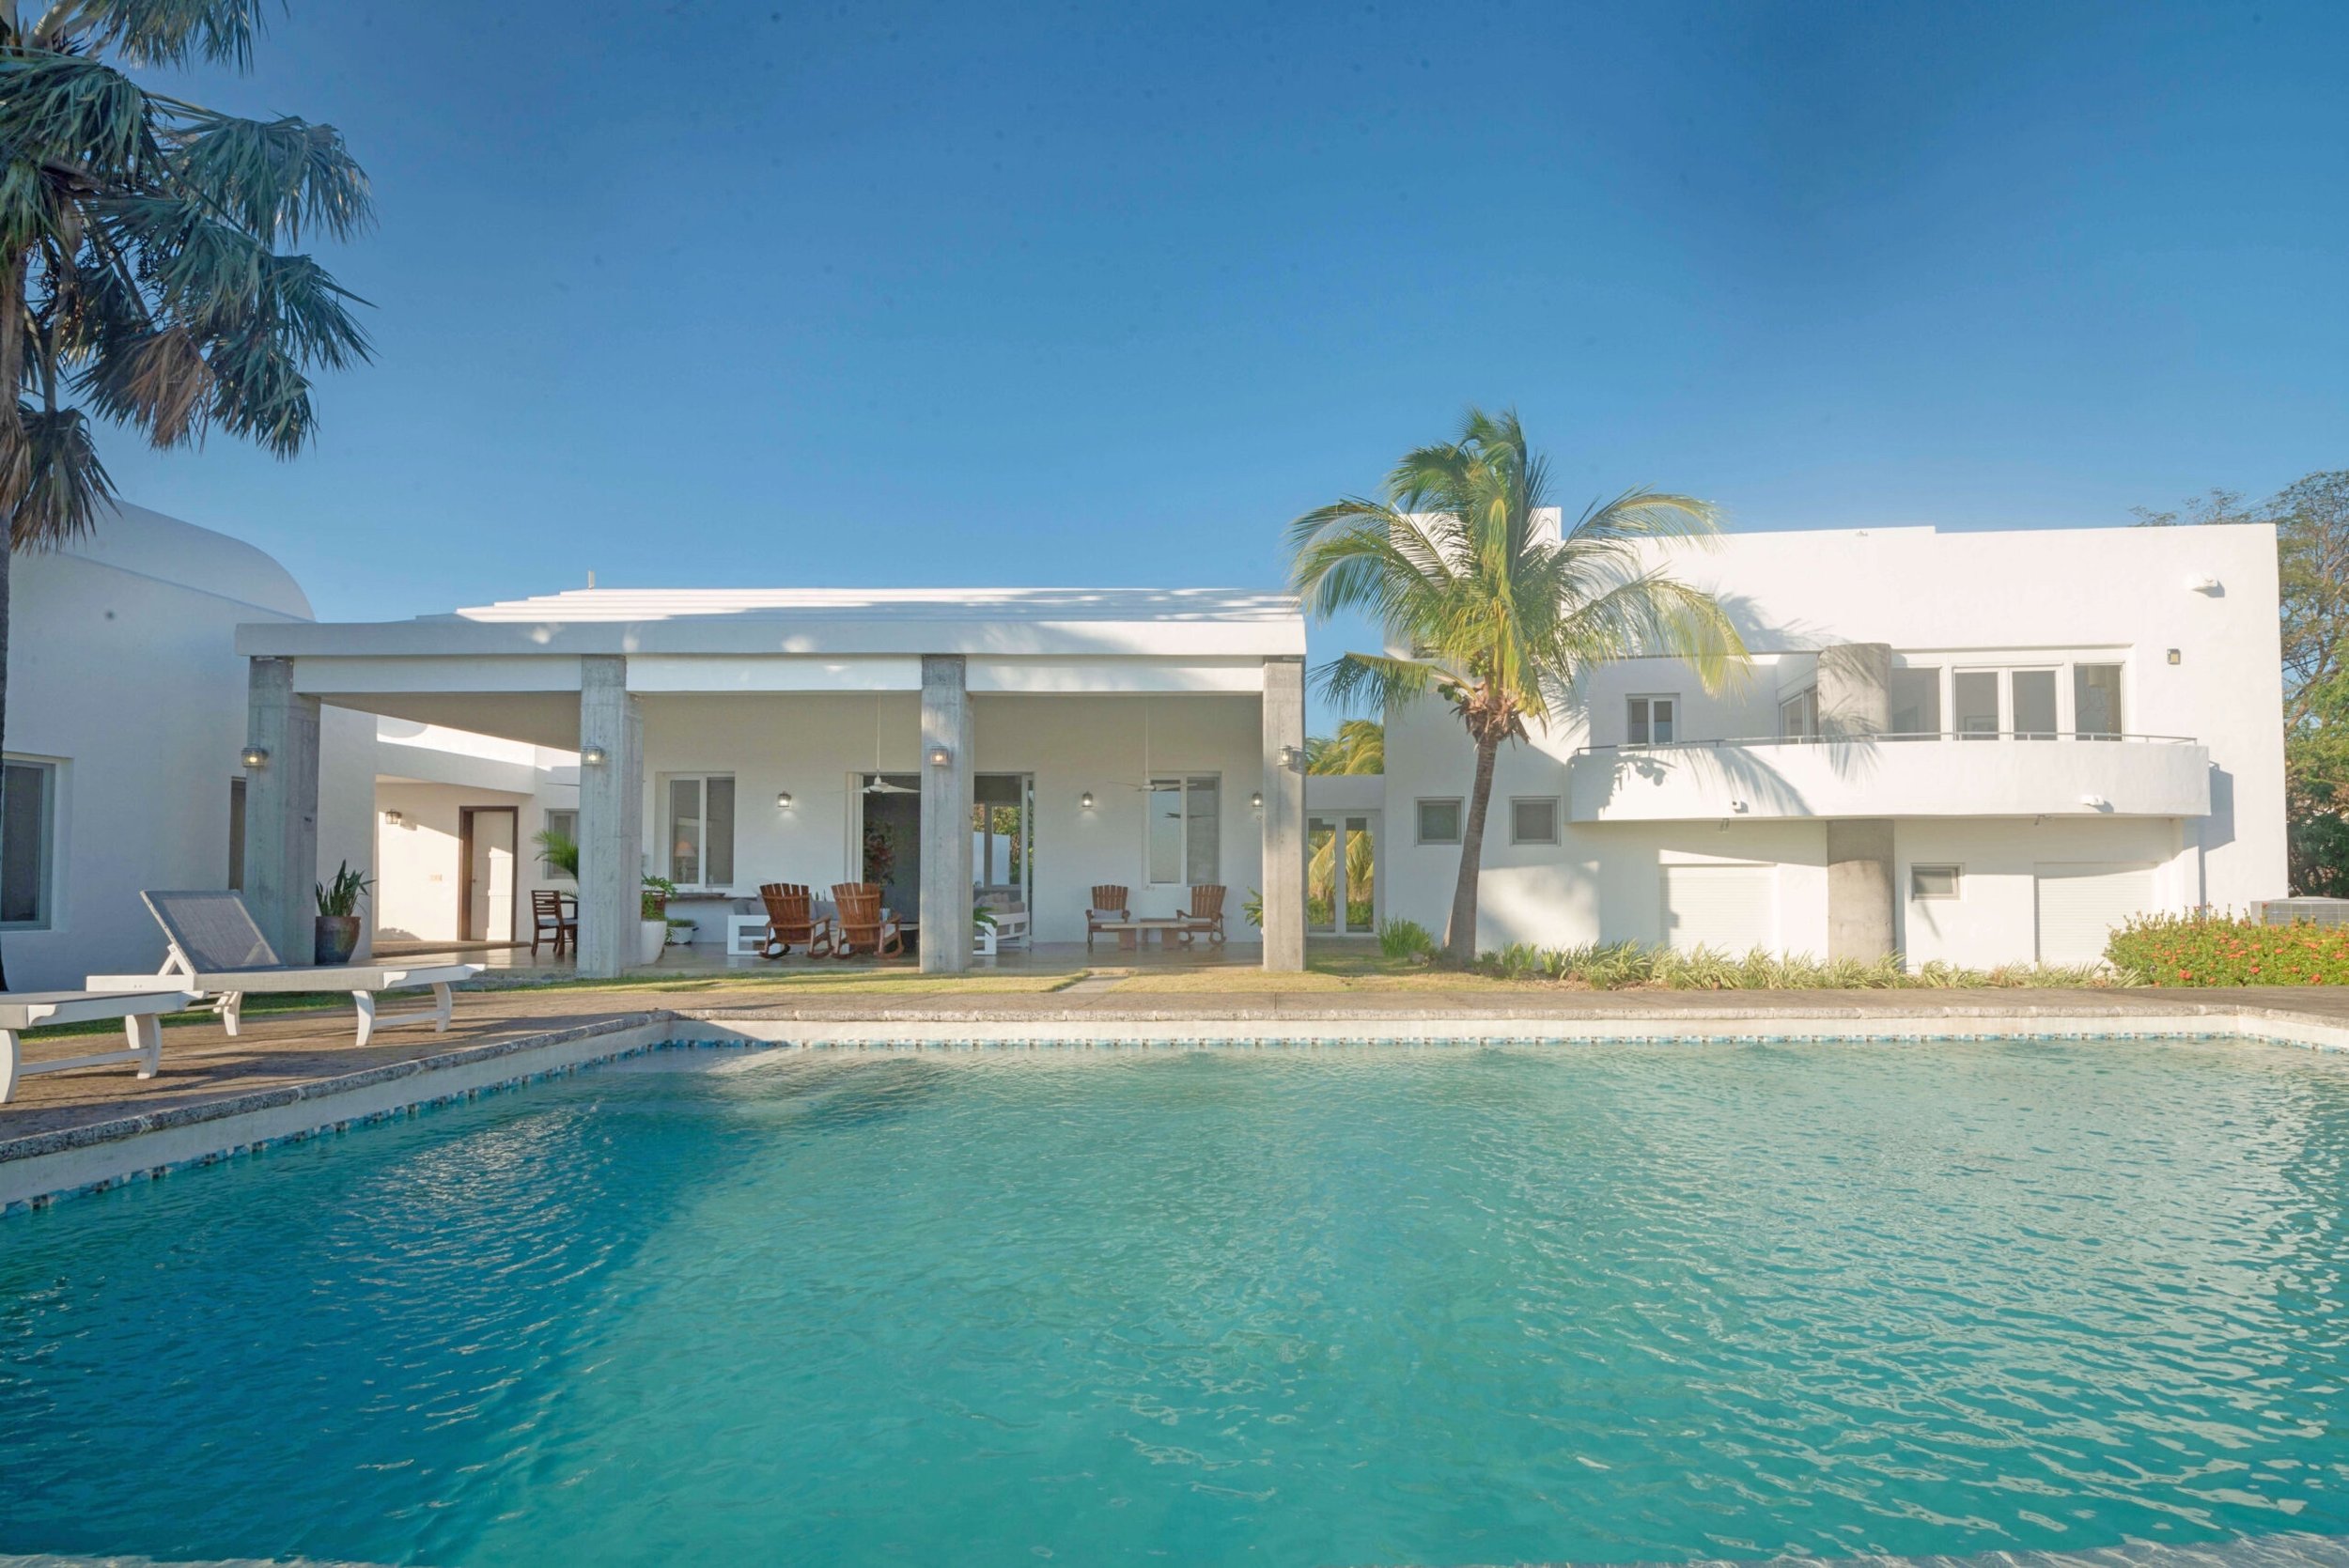 Luxury Home For Sale San Juan Del Sur Nicaragua Real Estate Property 8.jpg